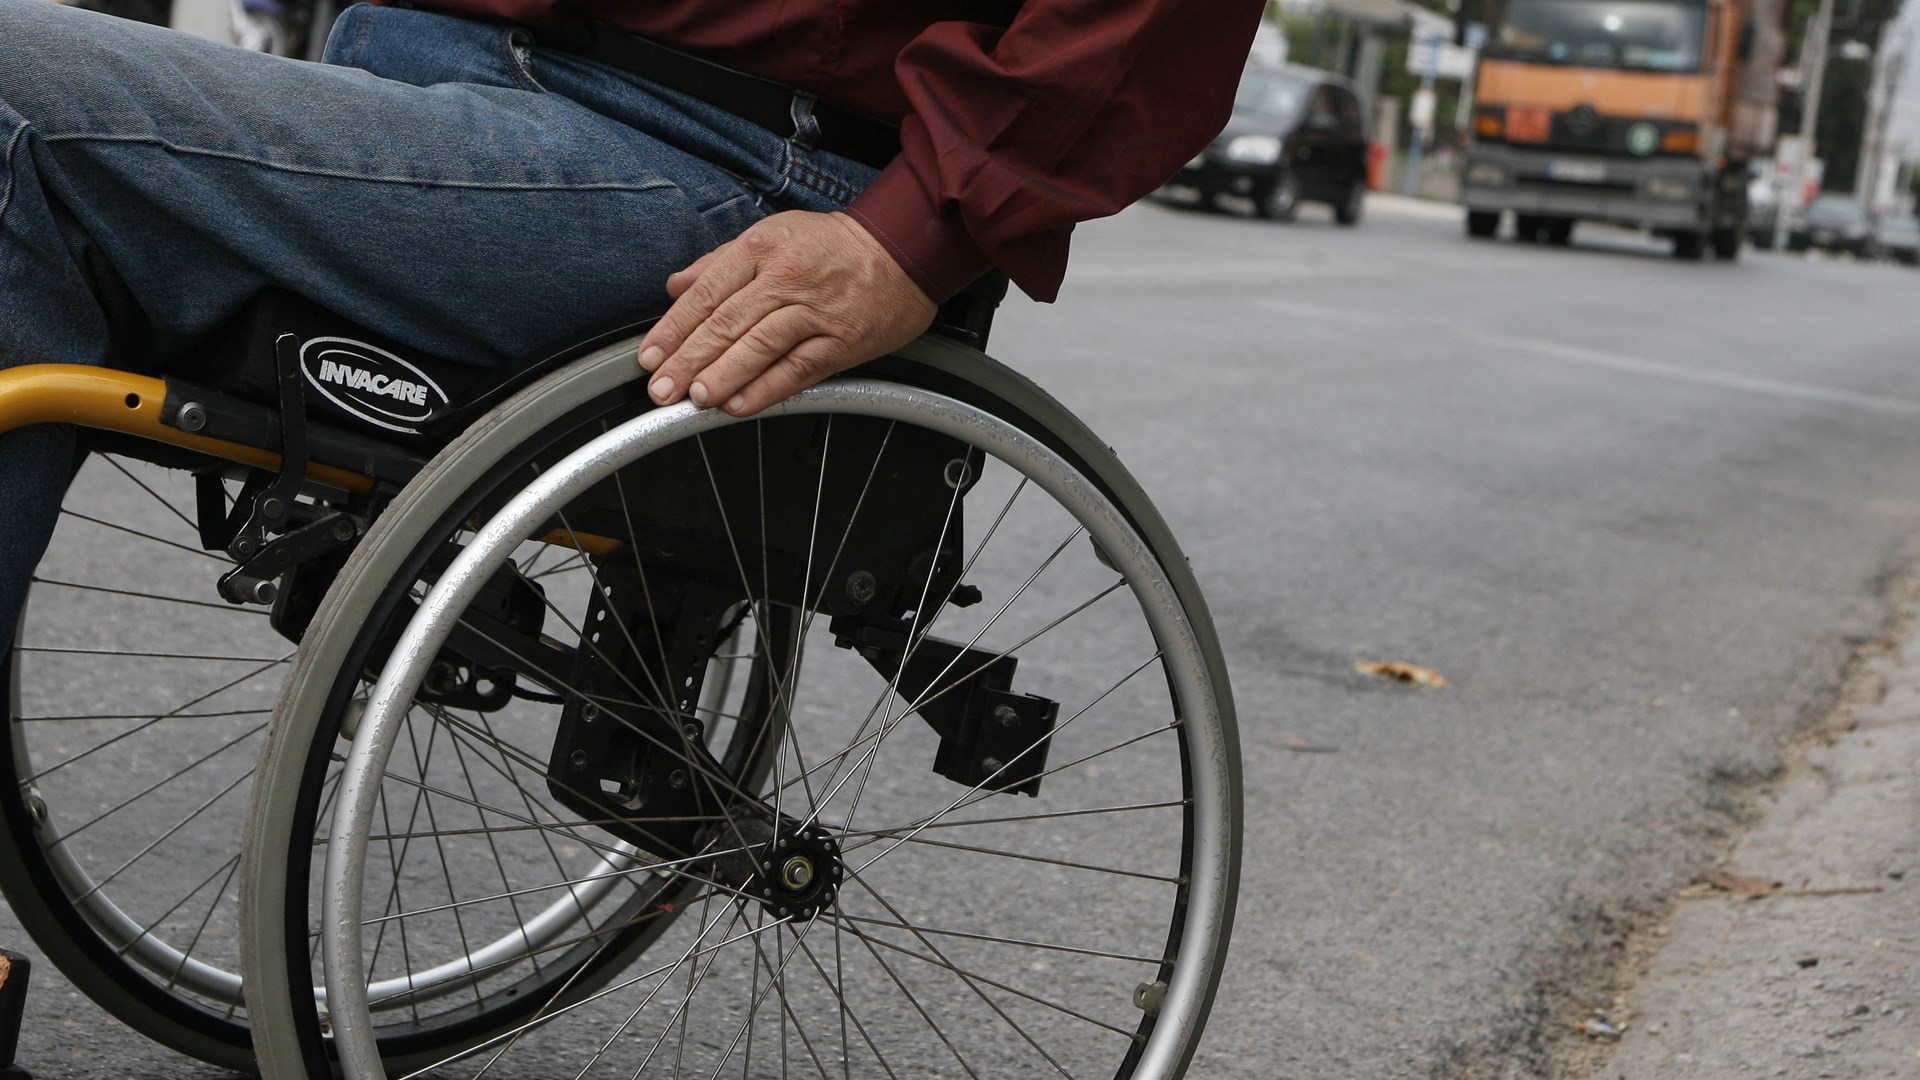 Έρχονται περικοπές στις νέες αναπηρικές συντάξεις – Ποιους αφορά